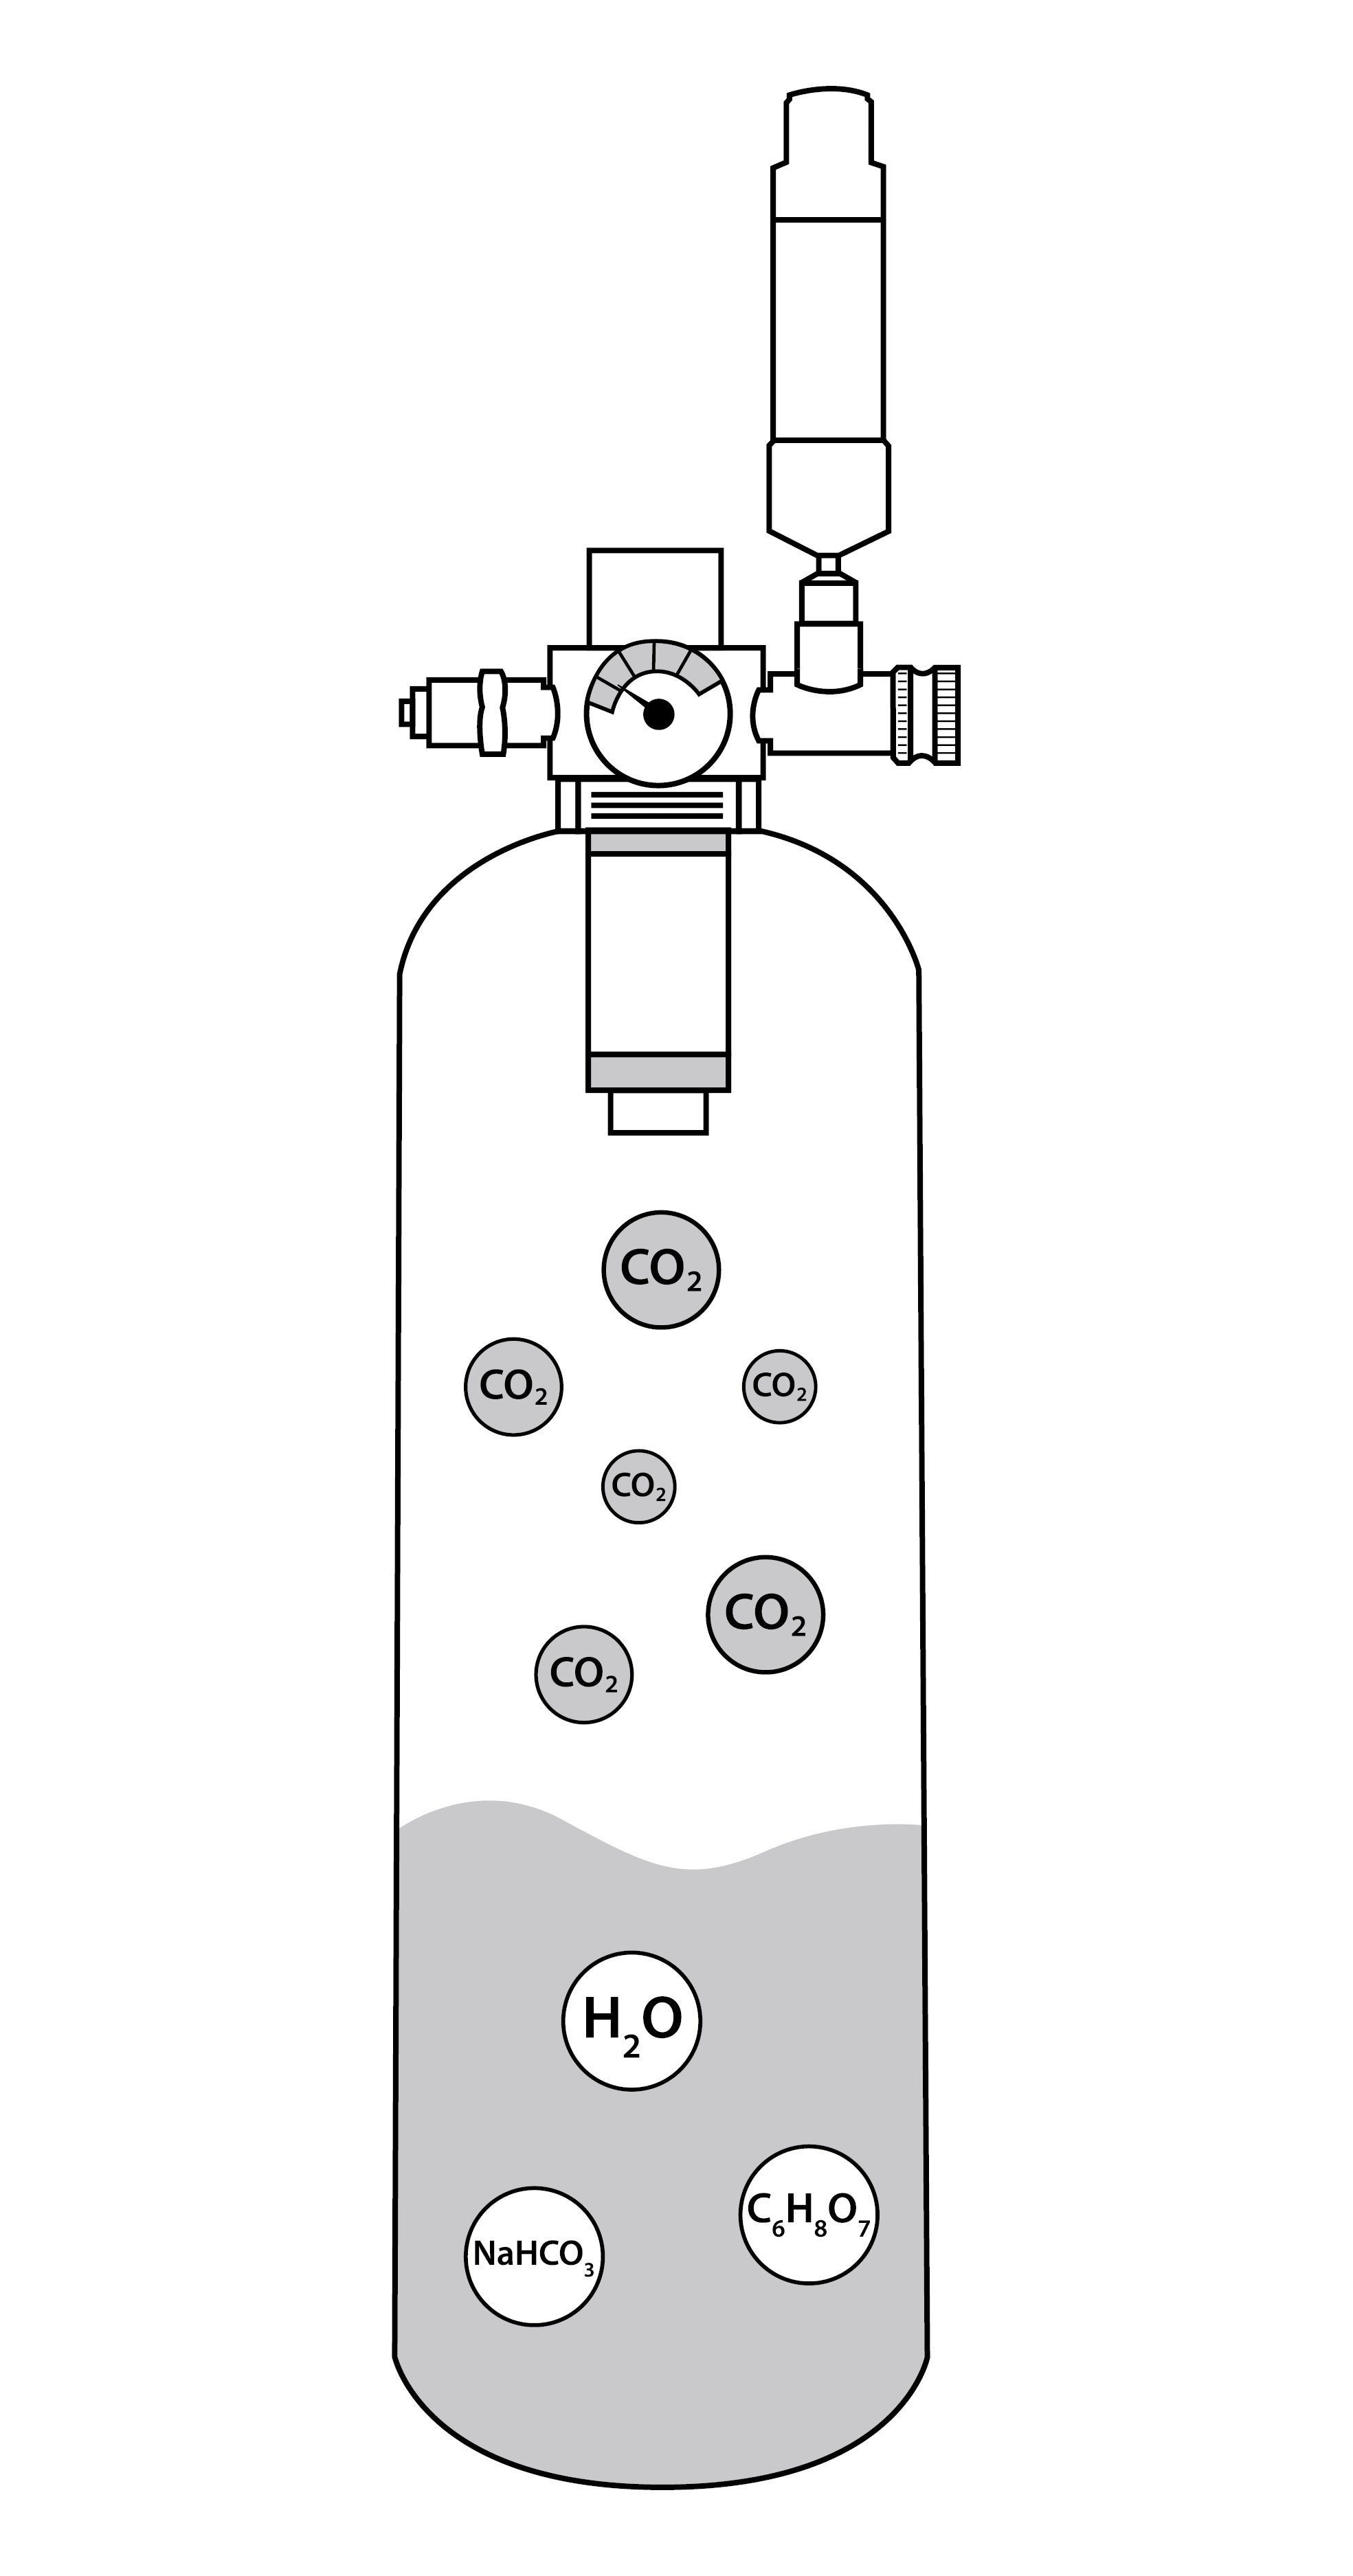 ARKA mySCAPE-CO2 System